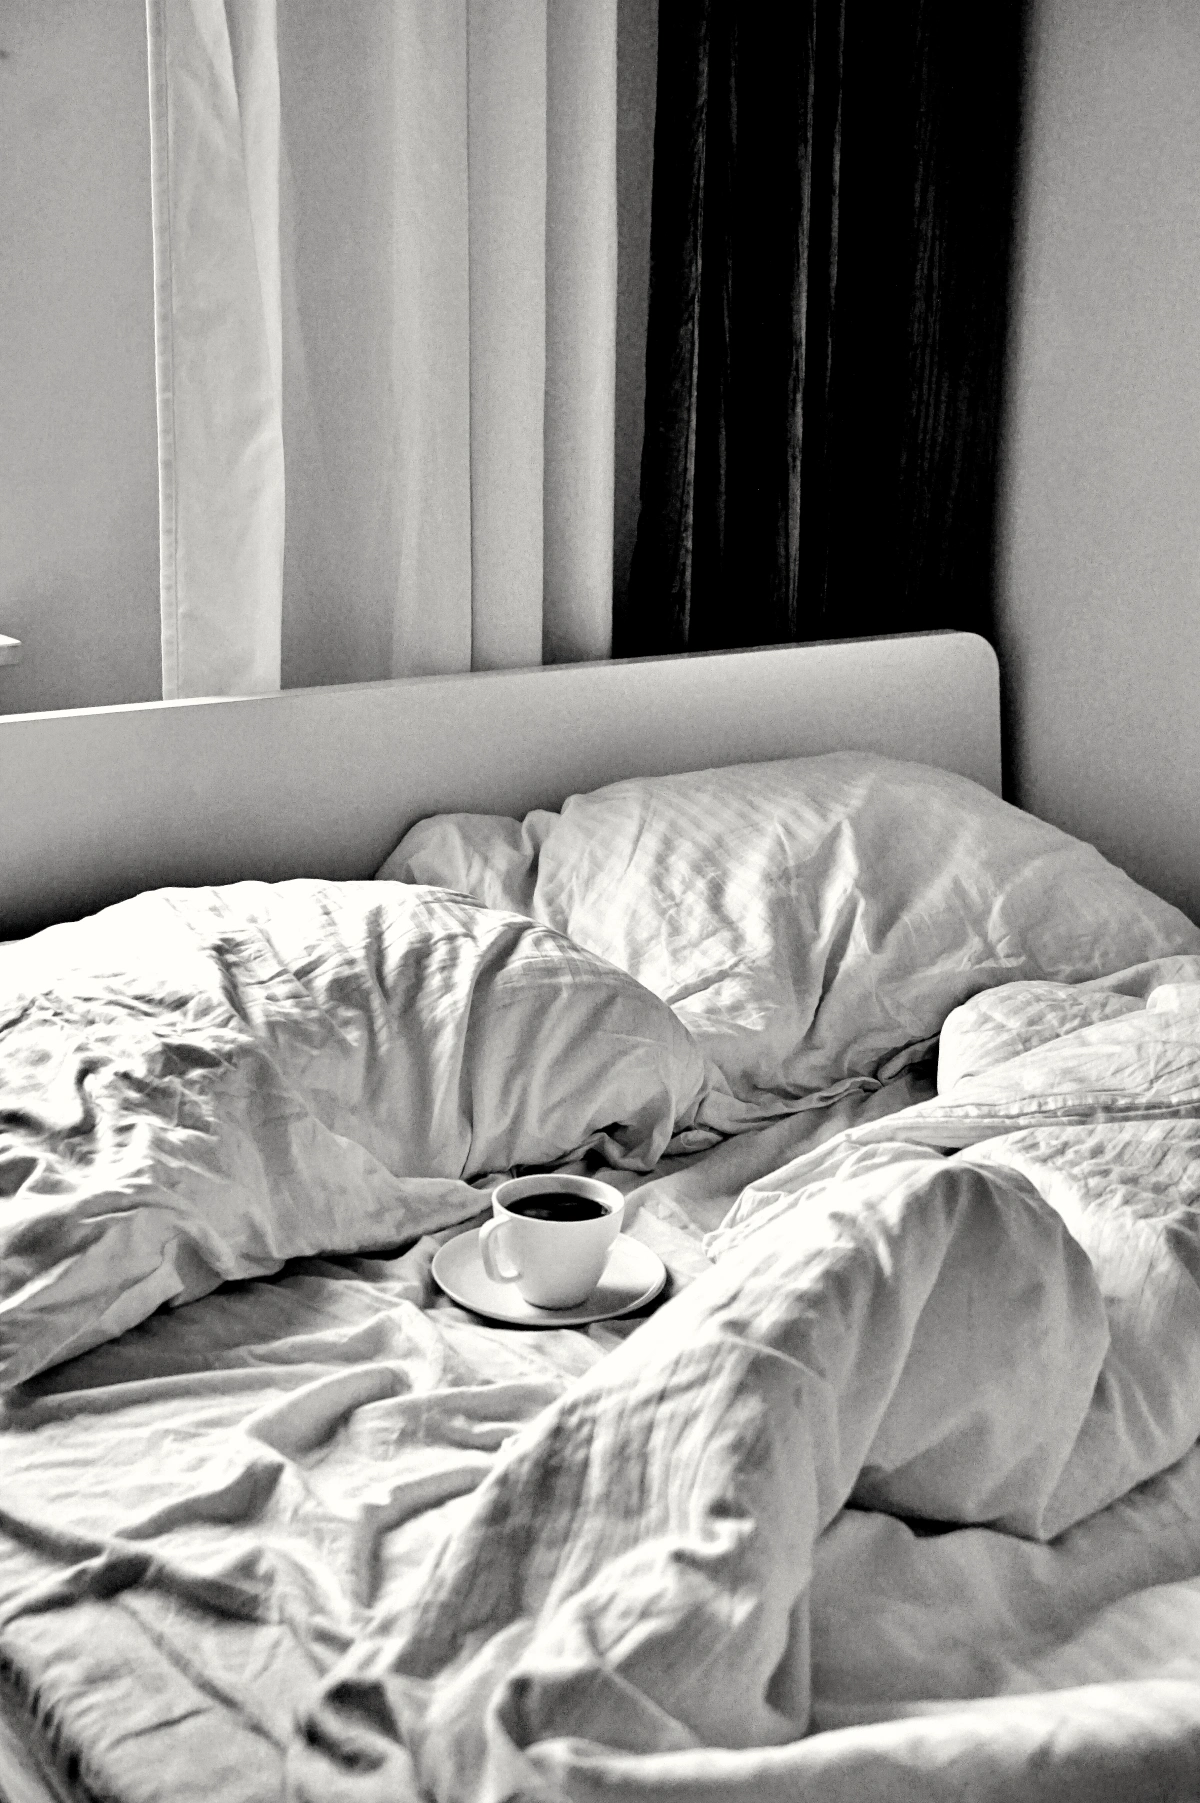 lit cocooning chambre a coucher tasse de cafe petit dejeuner reveil fenetre